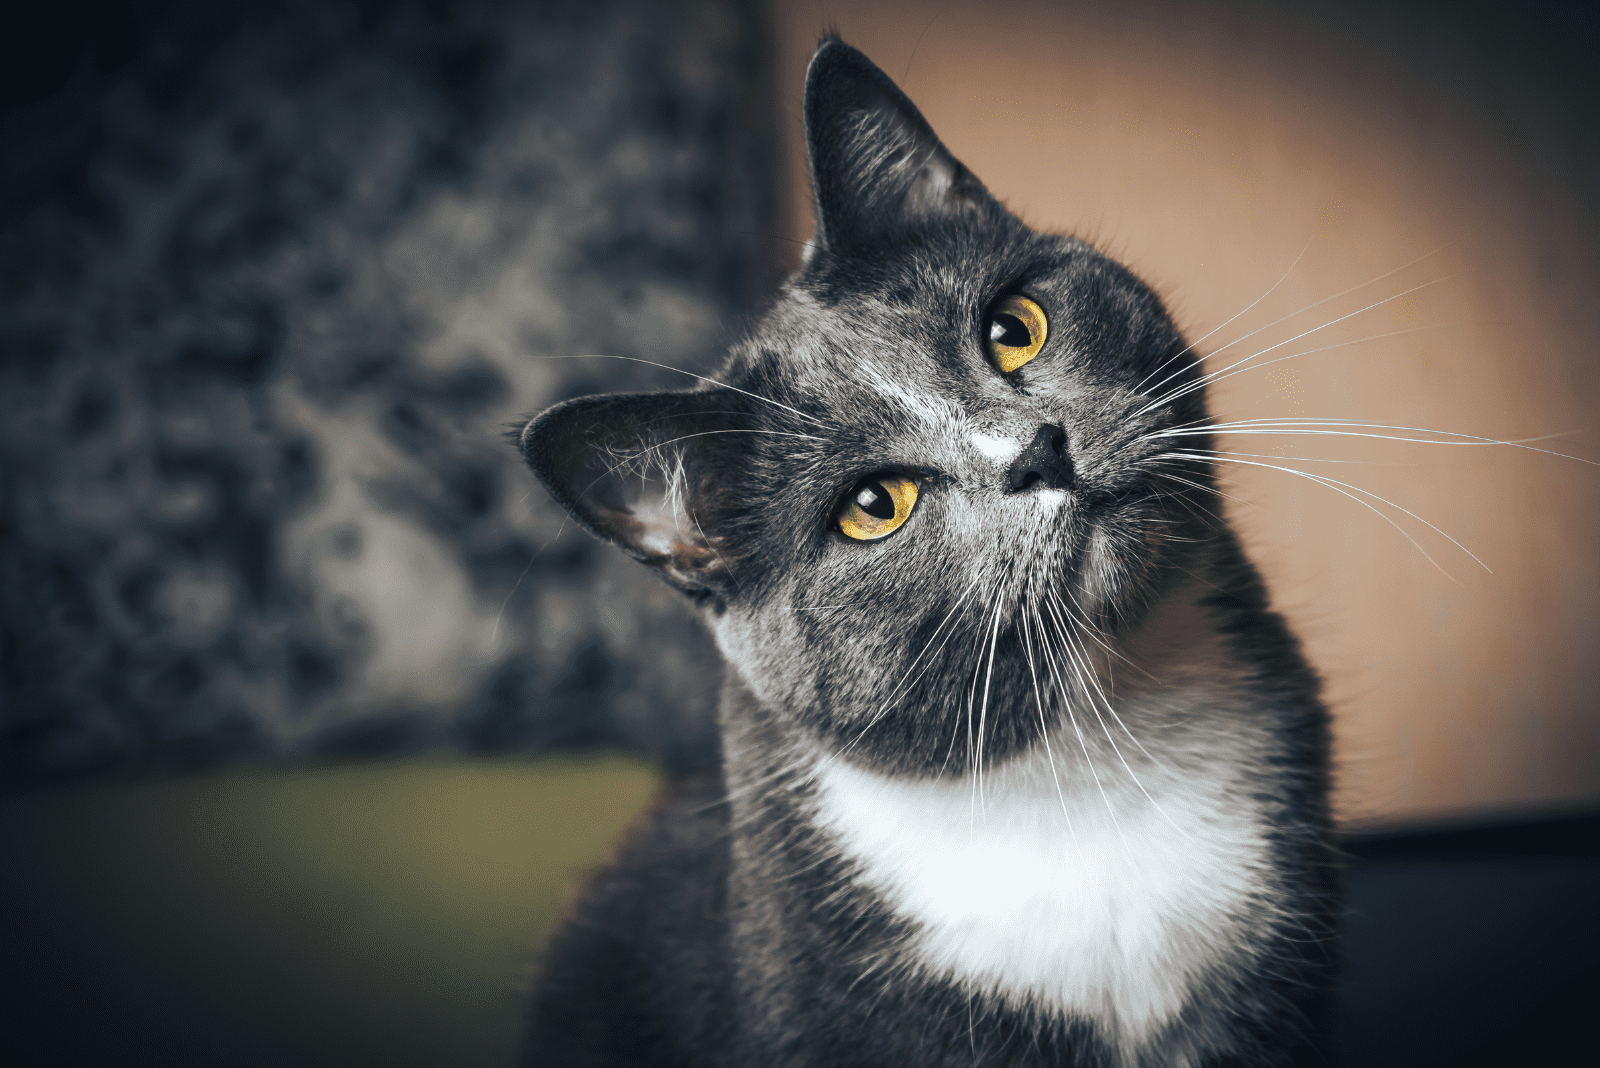 portrait of an adorable cat